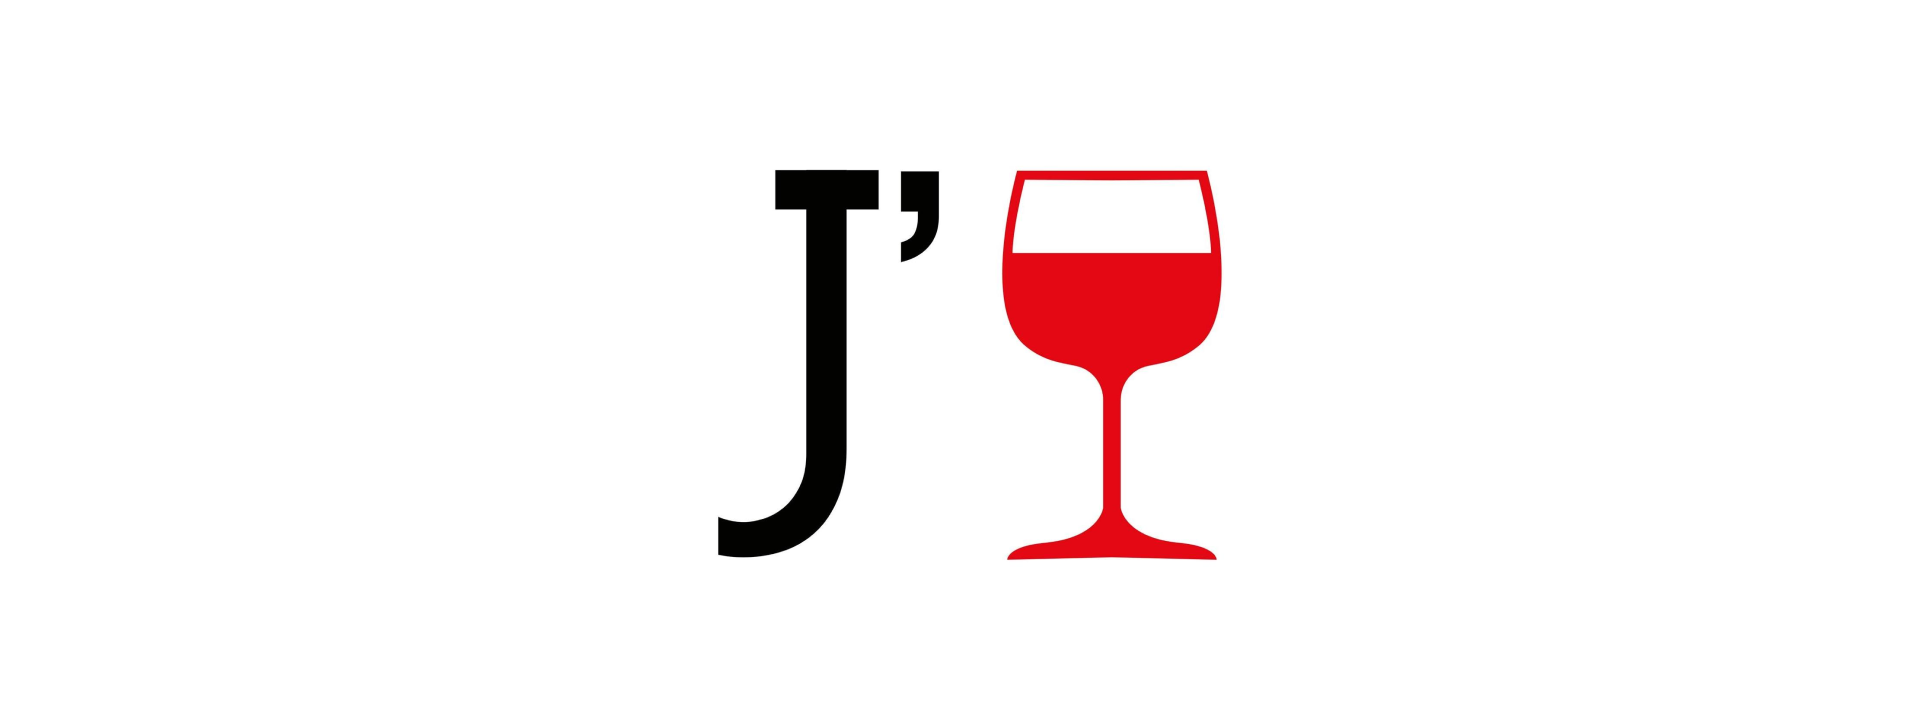 Heavn : Un verre à vin rouge de Bordeaux avec la lettre j.